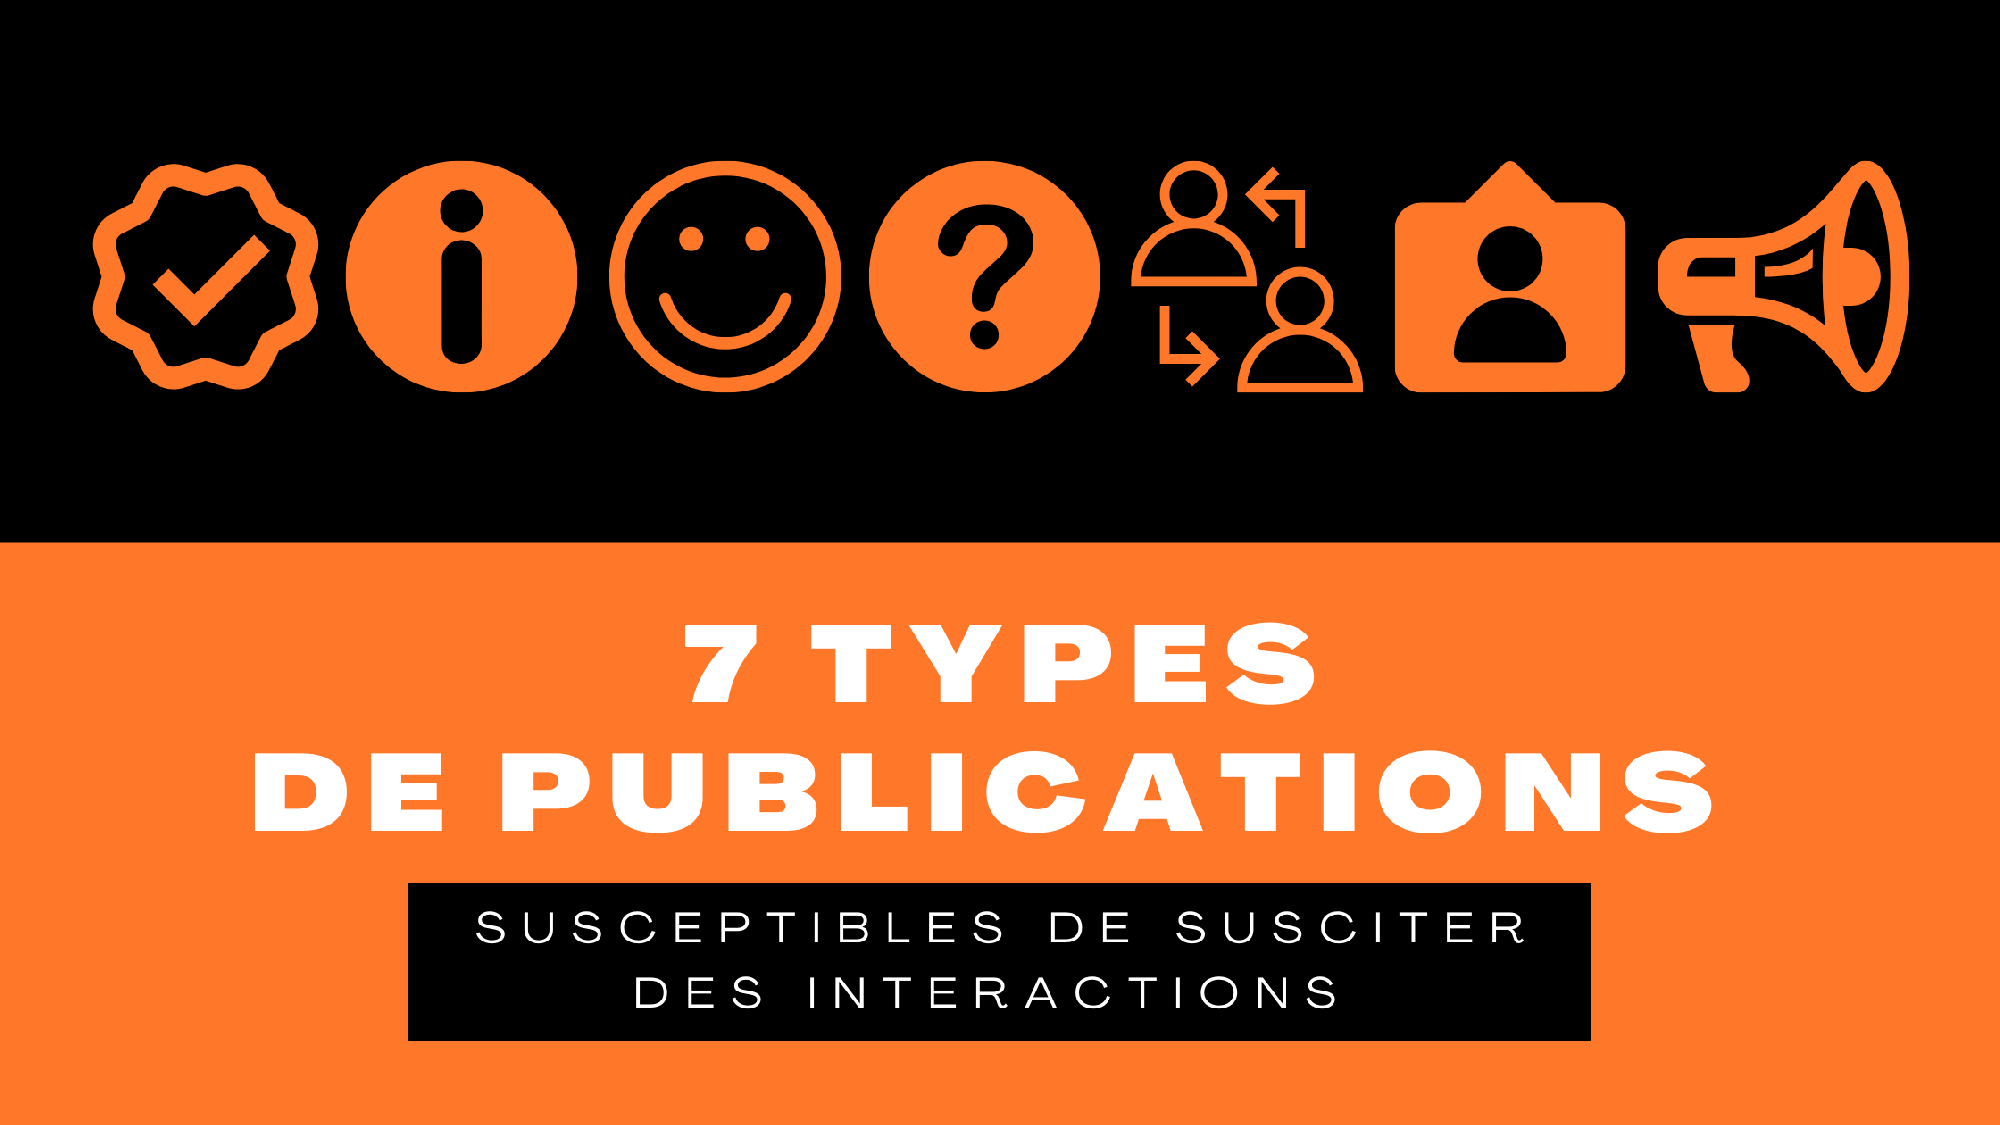 7 types de publications susceptibles de susciter des interactions